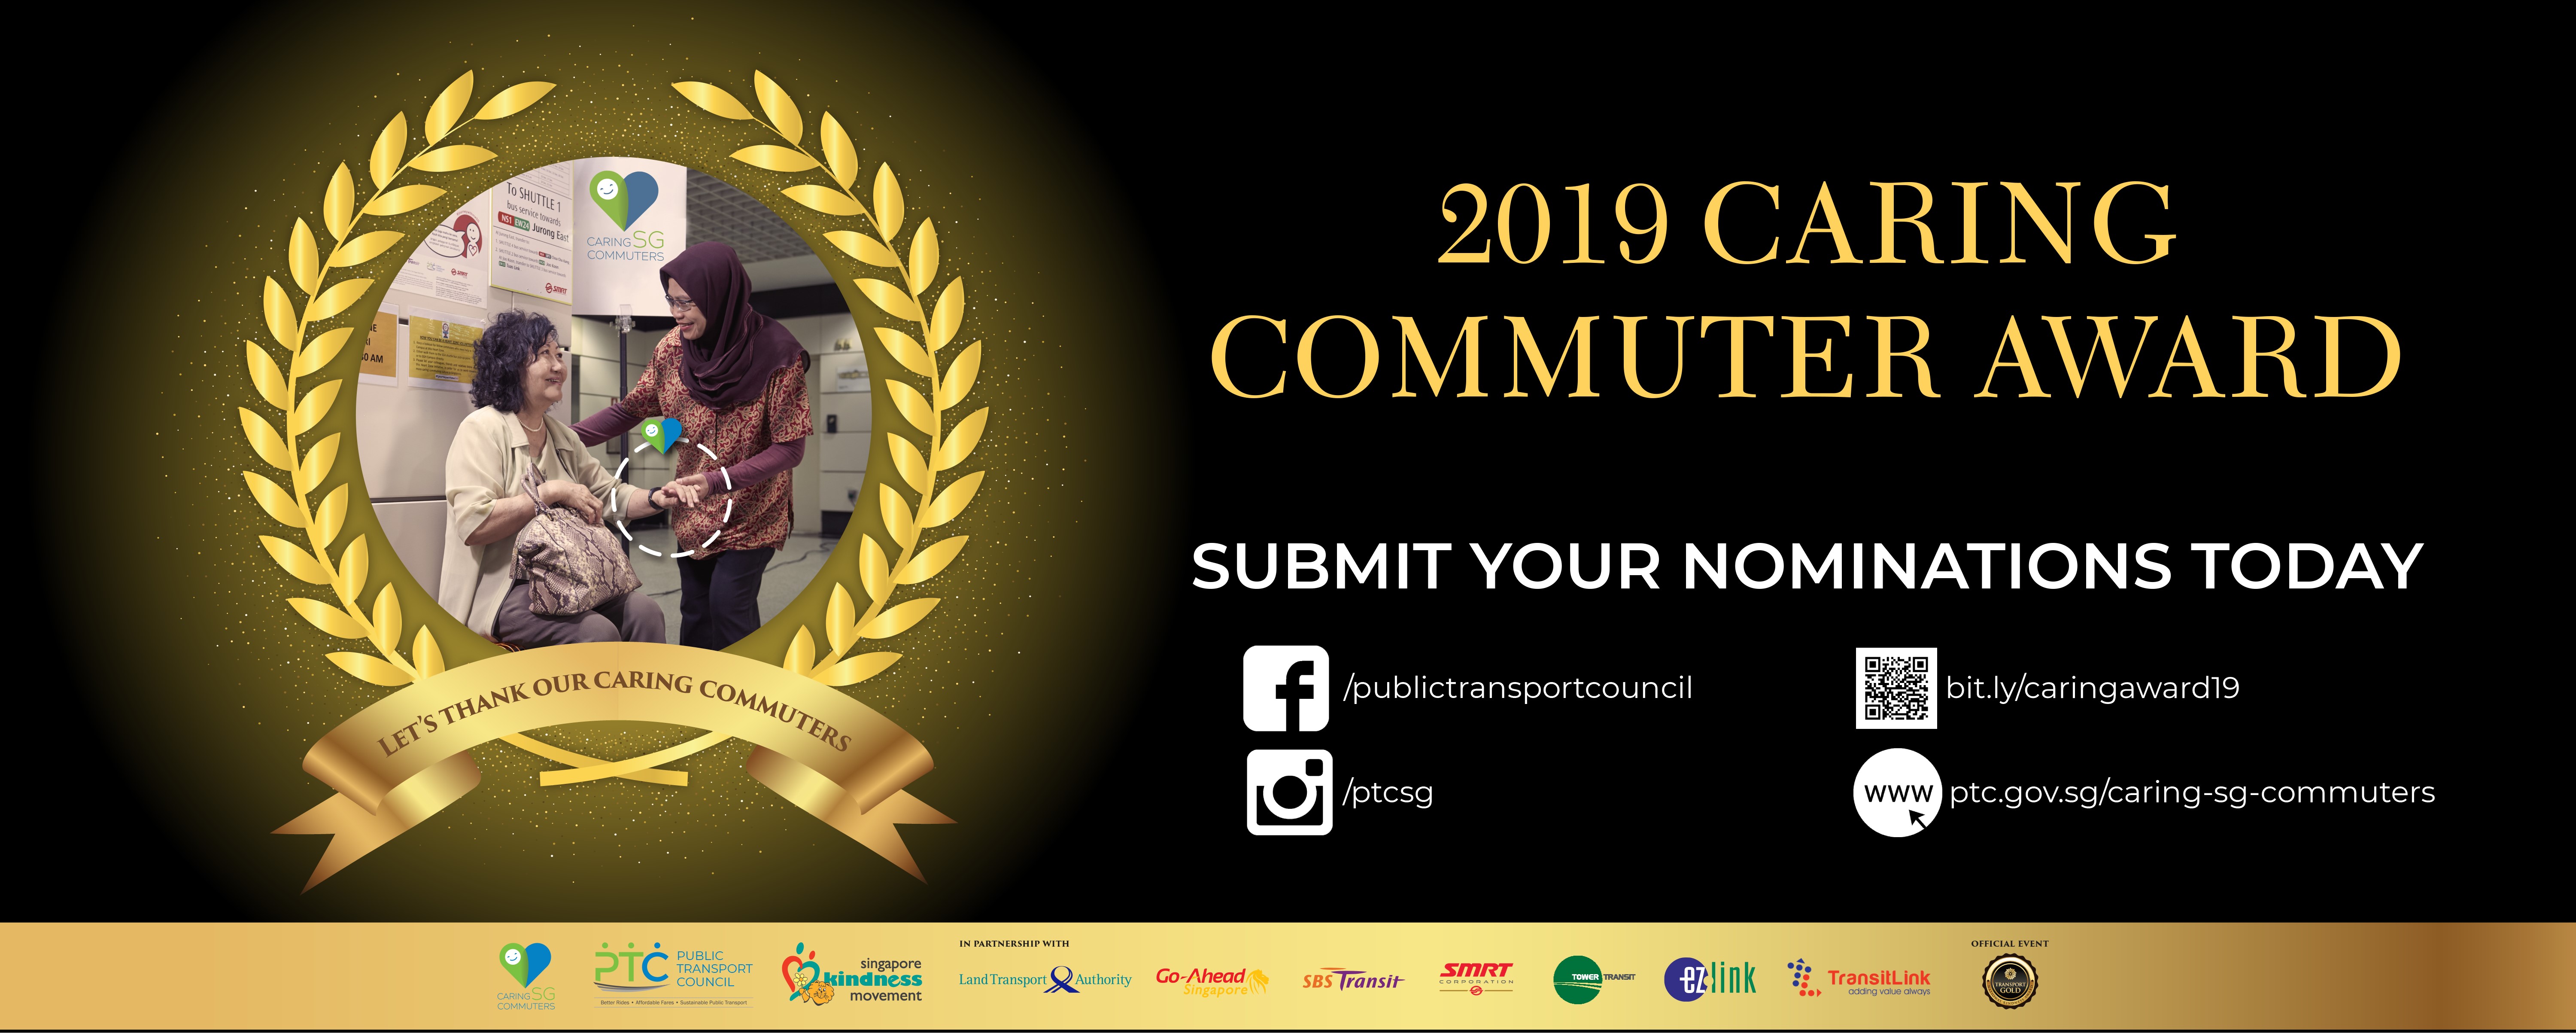 Caring Commuter Award